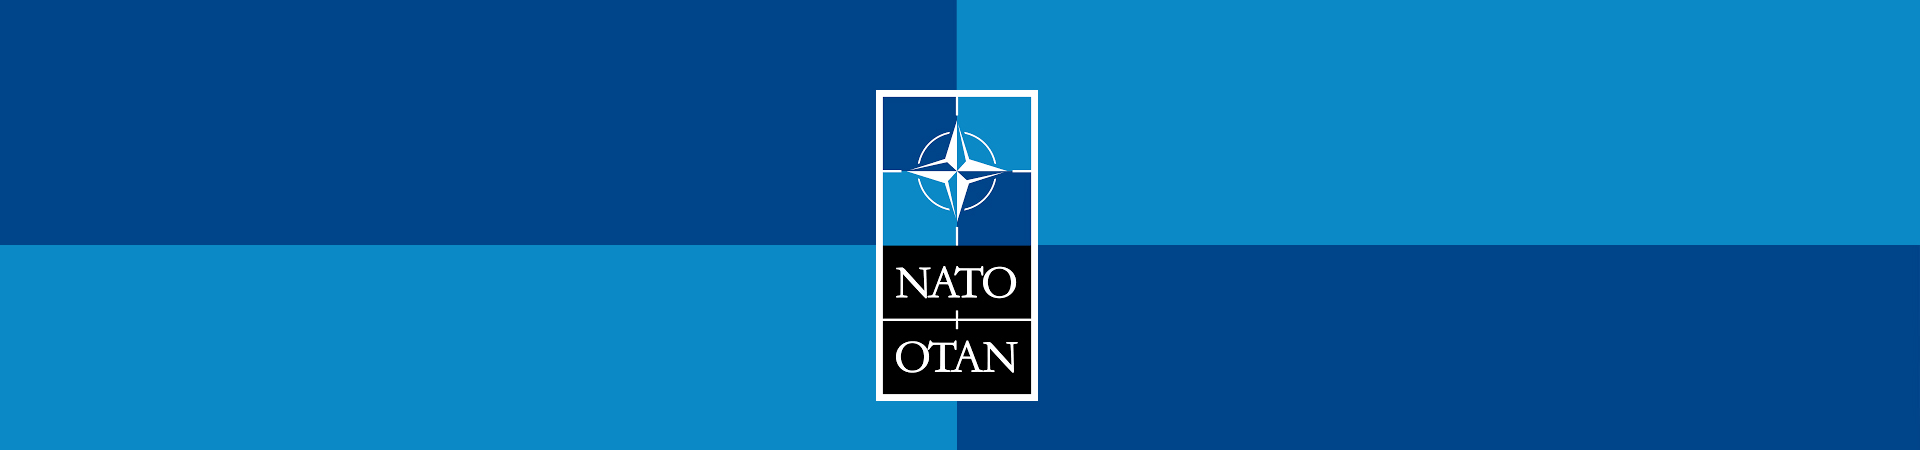 Imagem do símbolo da NATO